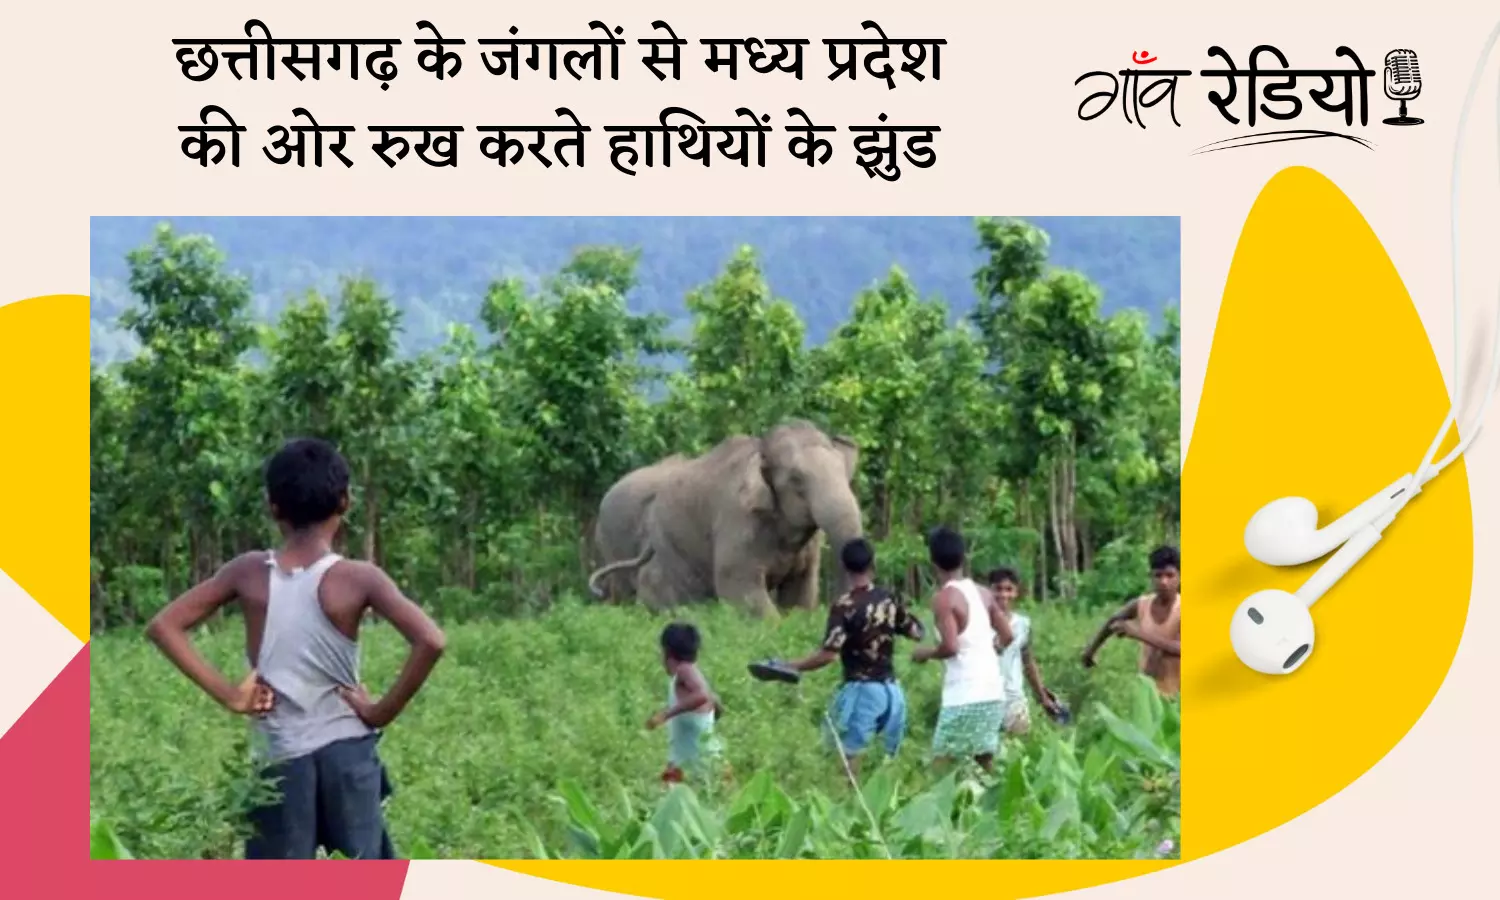 Gaon Radio: क्यों छत्तीसगढ़ के जंगलों से मध्य प्रदेश की तरफ बढ़ने लगे हैं हाथियों के झुंड